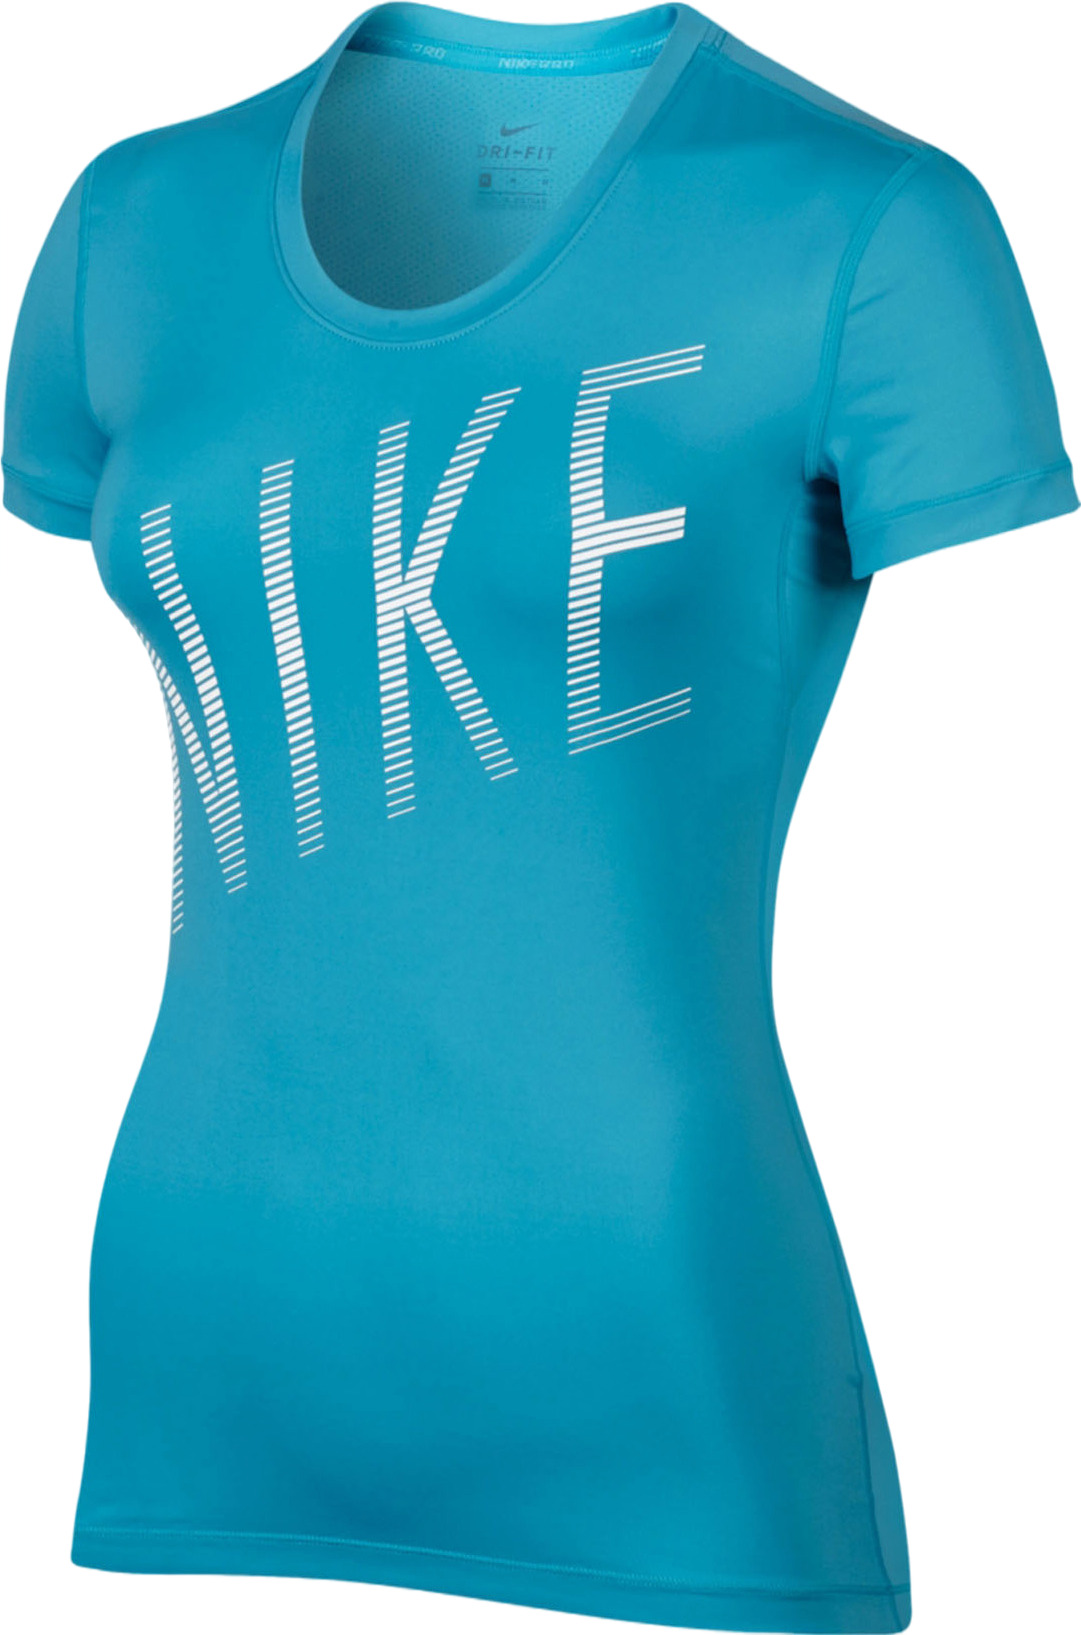 Женская футболка Nike Pro Cool Top SS Summer Grx 832066-447